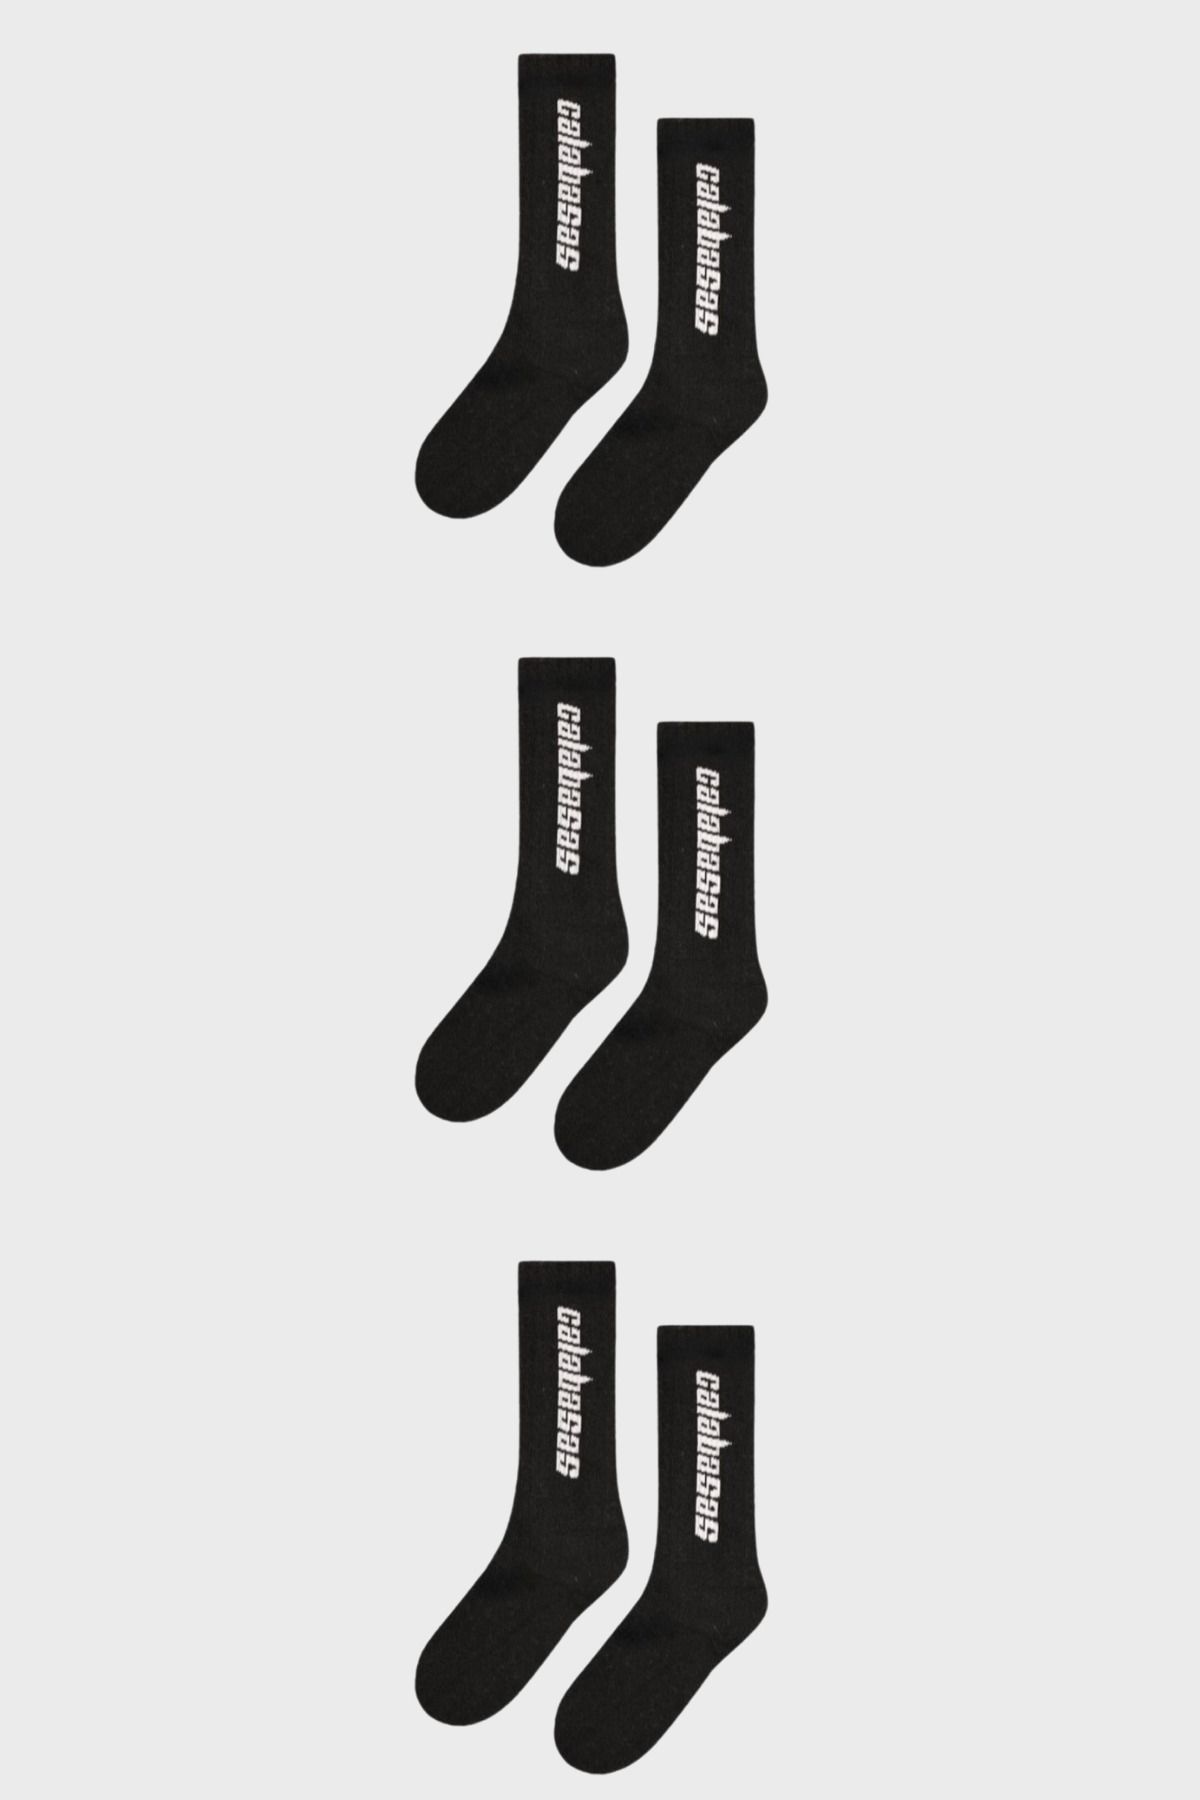 BOSHETTI Unisex Yıkamalı Premium Sloganlı Siyah 3'lü Paket Spor Çorap